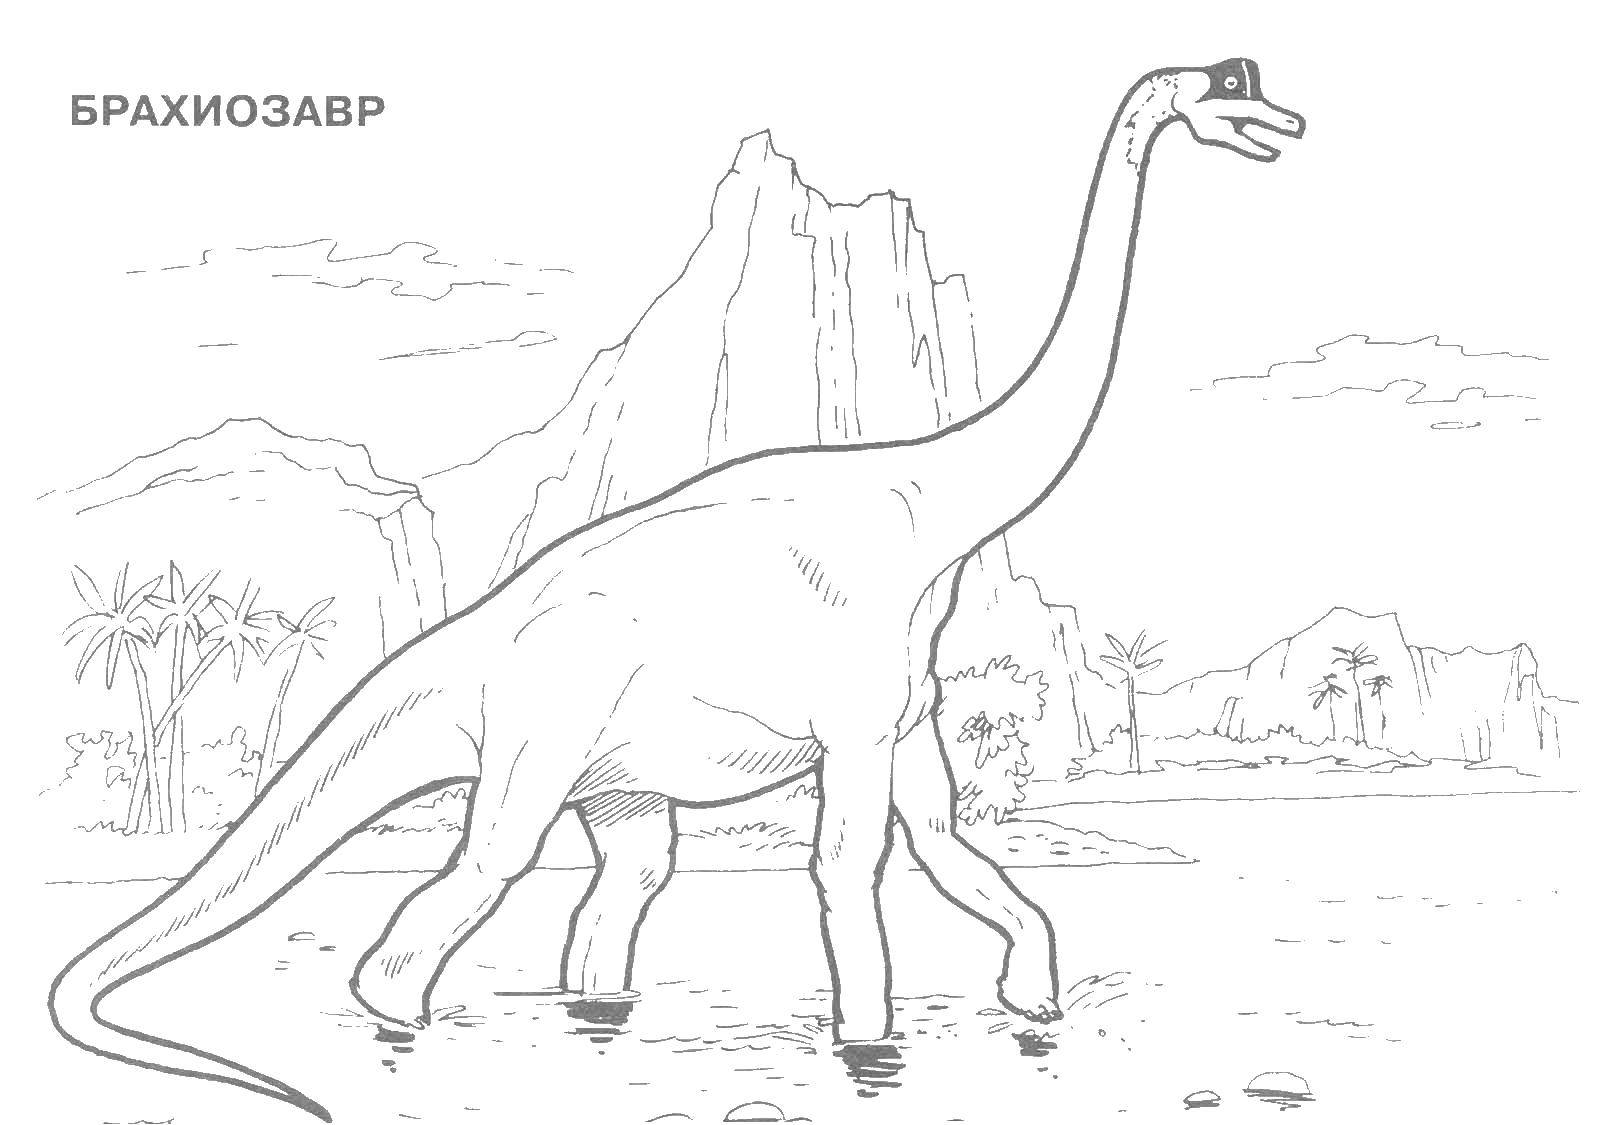 Название: Раскраска Брахиозавр динозавр юрского периода. Категория: парк юрского периода. Теги: Брахиозавр, динозавр, .